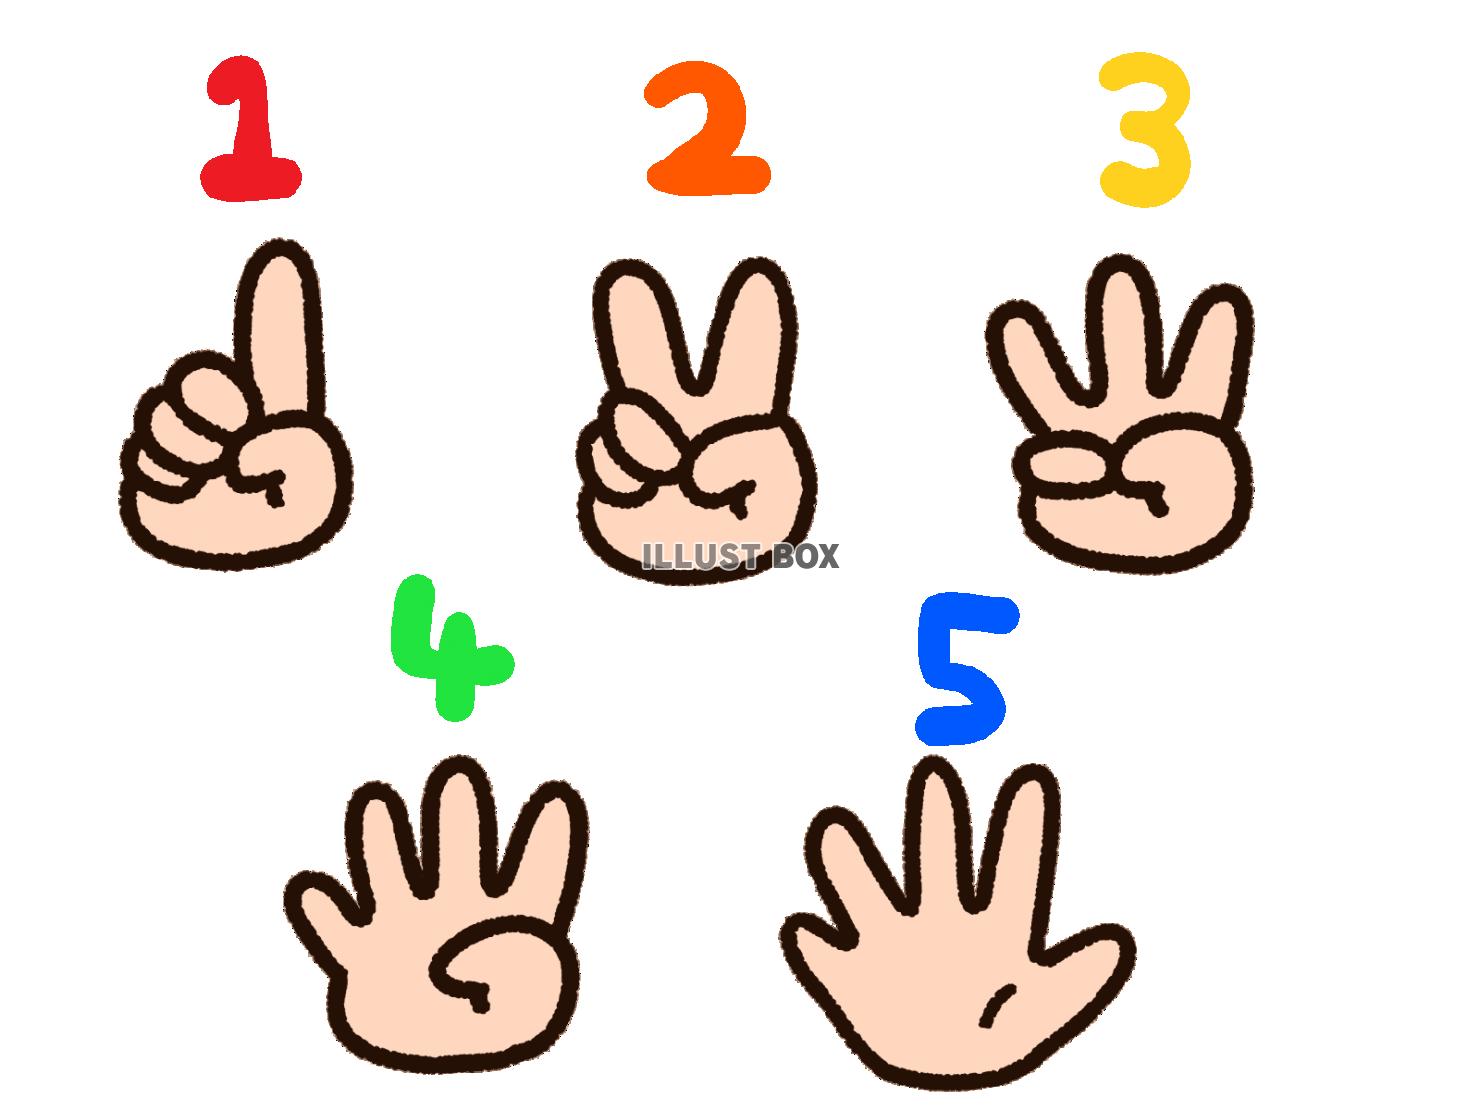 图片素材 : 手指, 符号, 显示, 和平, 一对, 手势, 信号, 休息, 臂, 武器, v, 2, 胜利, 第二, 拇指, sein, 赢得, 标志语言, 感, 表明, 数量, 克服 ...